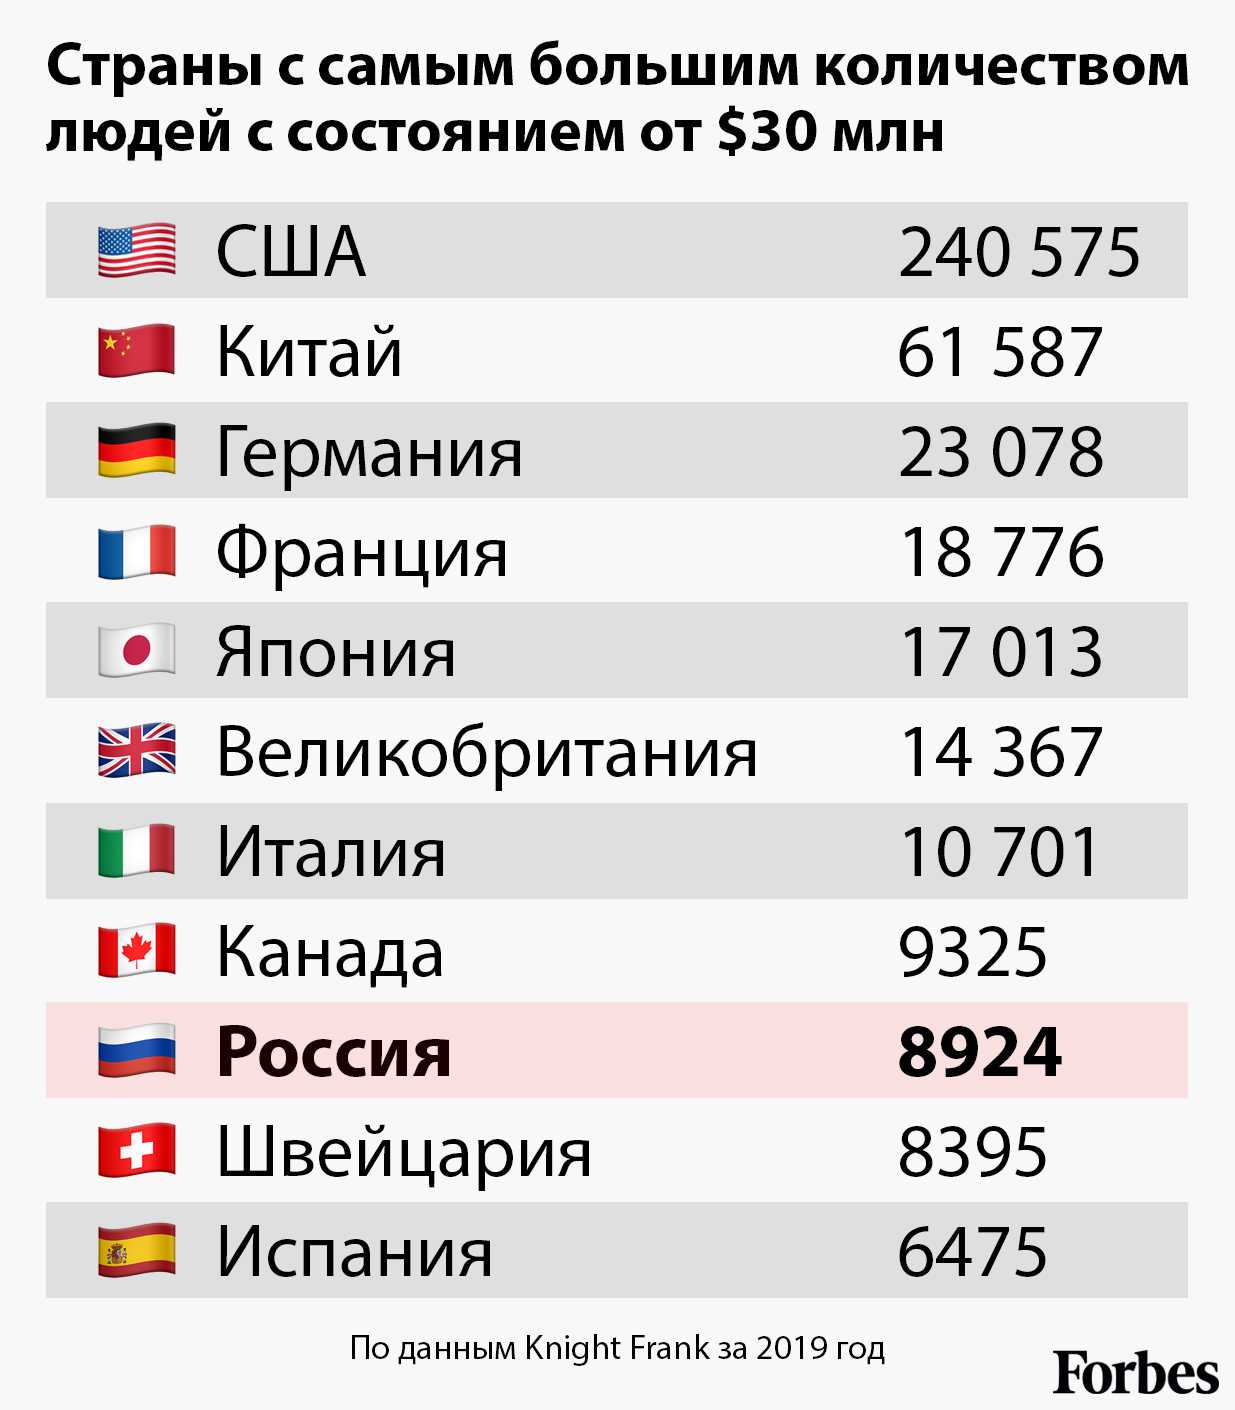 Самая большая зарплата в россии: у кого и у каких профессий?